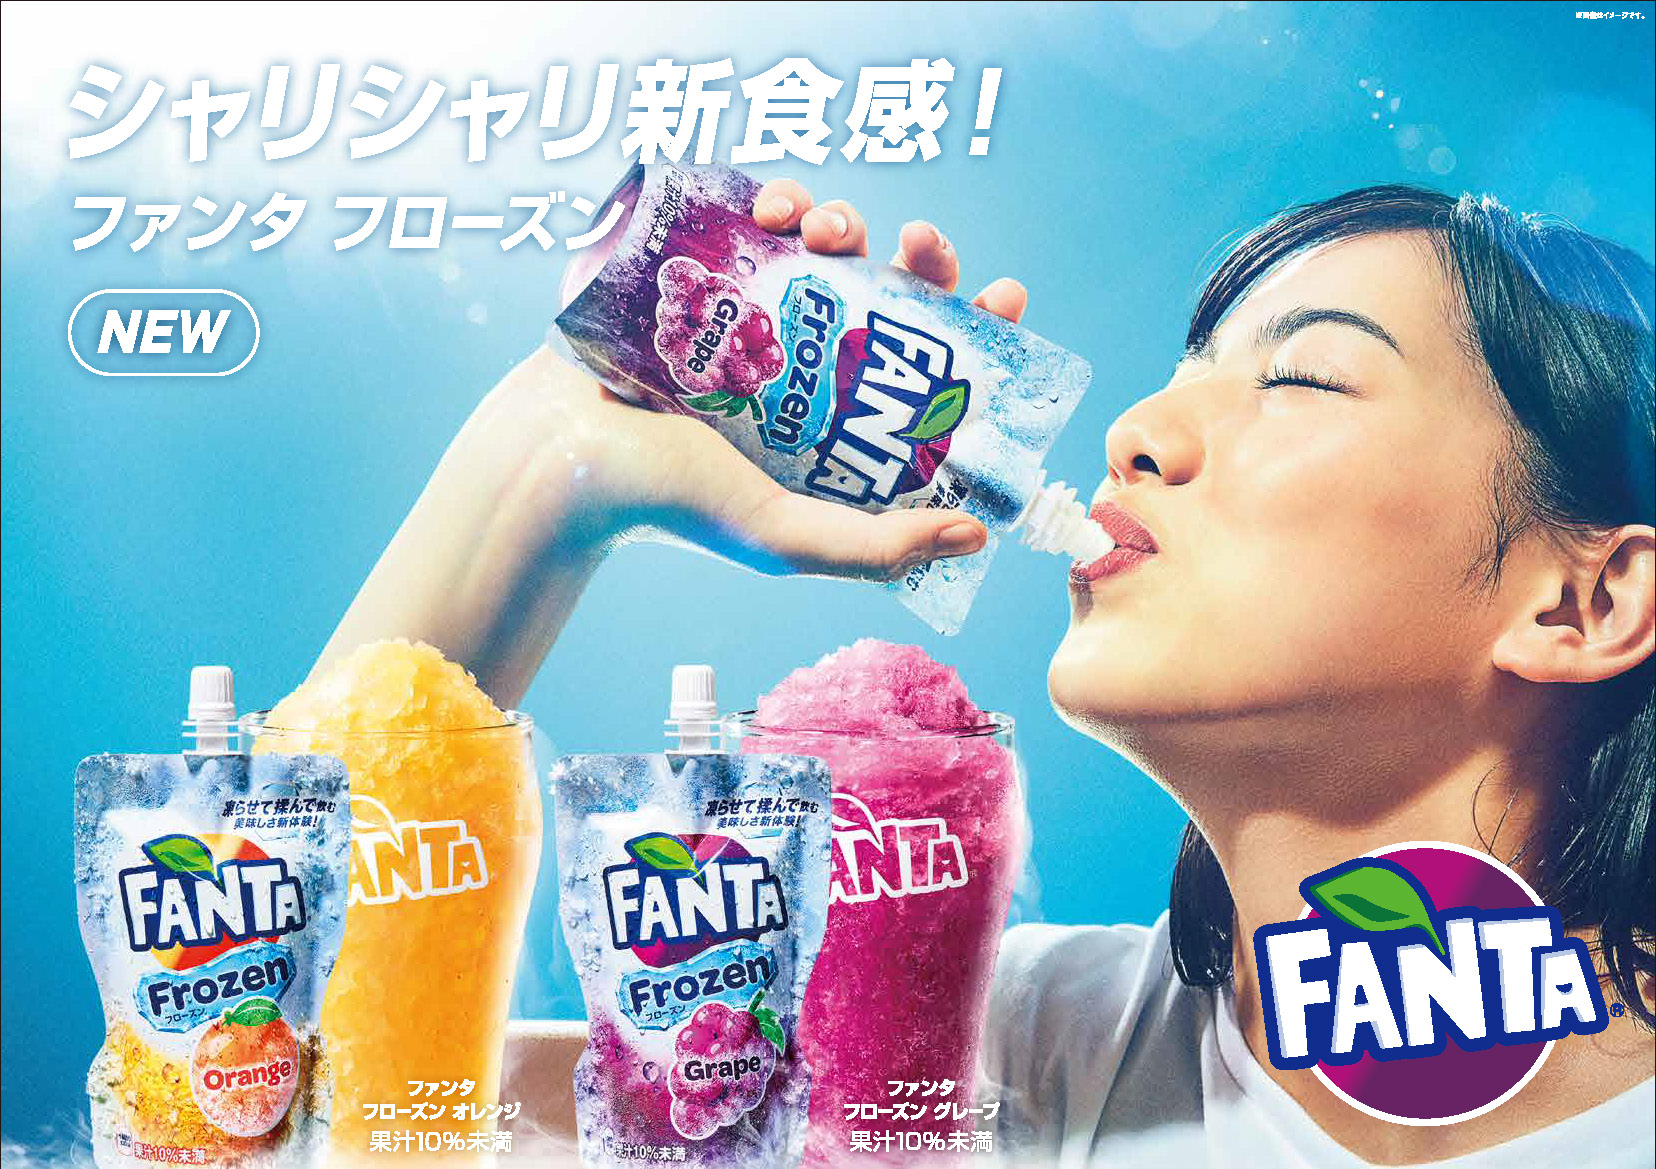 ファンタ フローズン グレープ ファンタ フローズン オレンジ 18年4月16日 月 から全国で新発売 日本コカ コーラ株式会社のプレスリリース